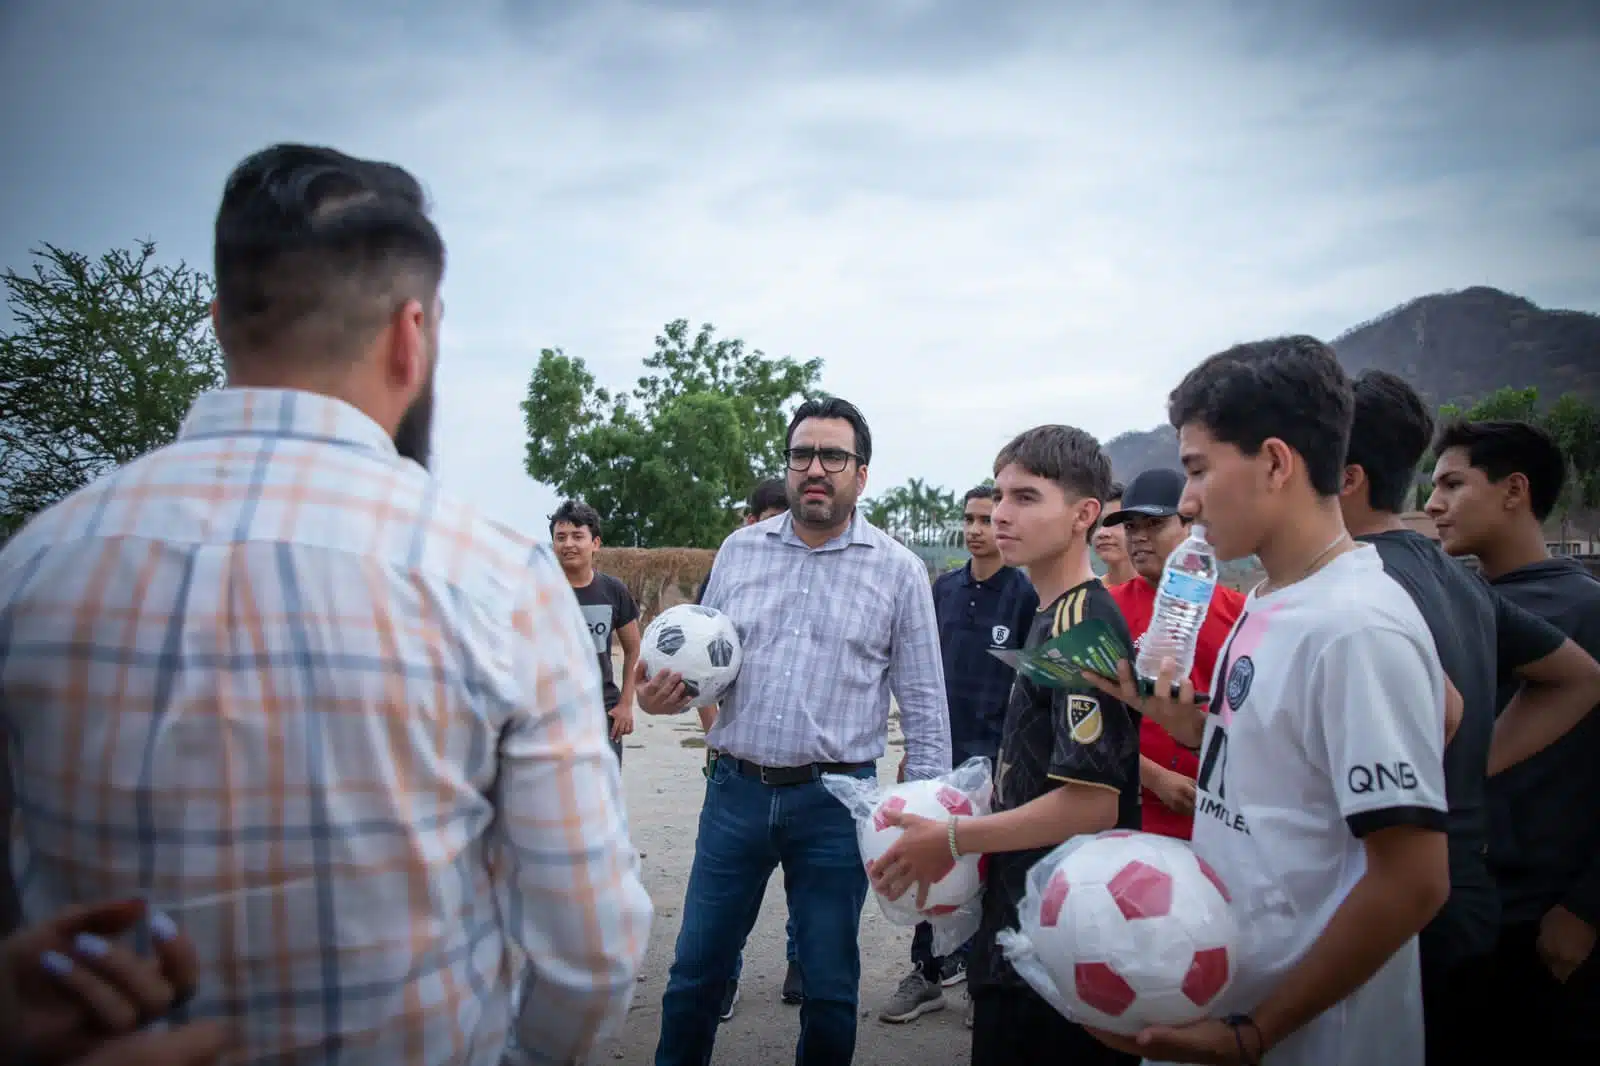 Alcalde de Culiacán visita la comunidad de Jesús María y da a conocer la actividades culturales y deportivas, además de presentar la 